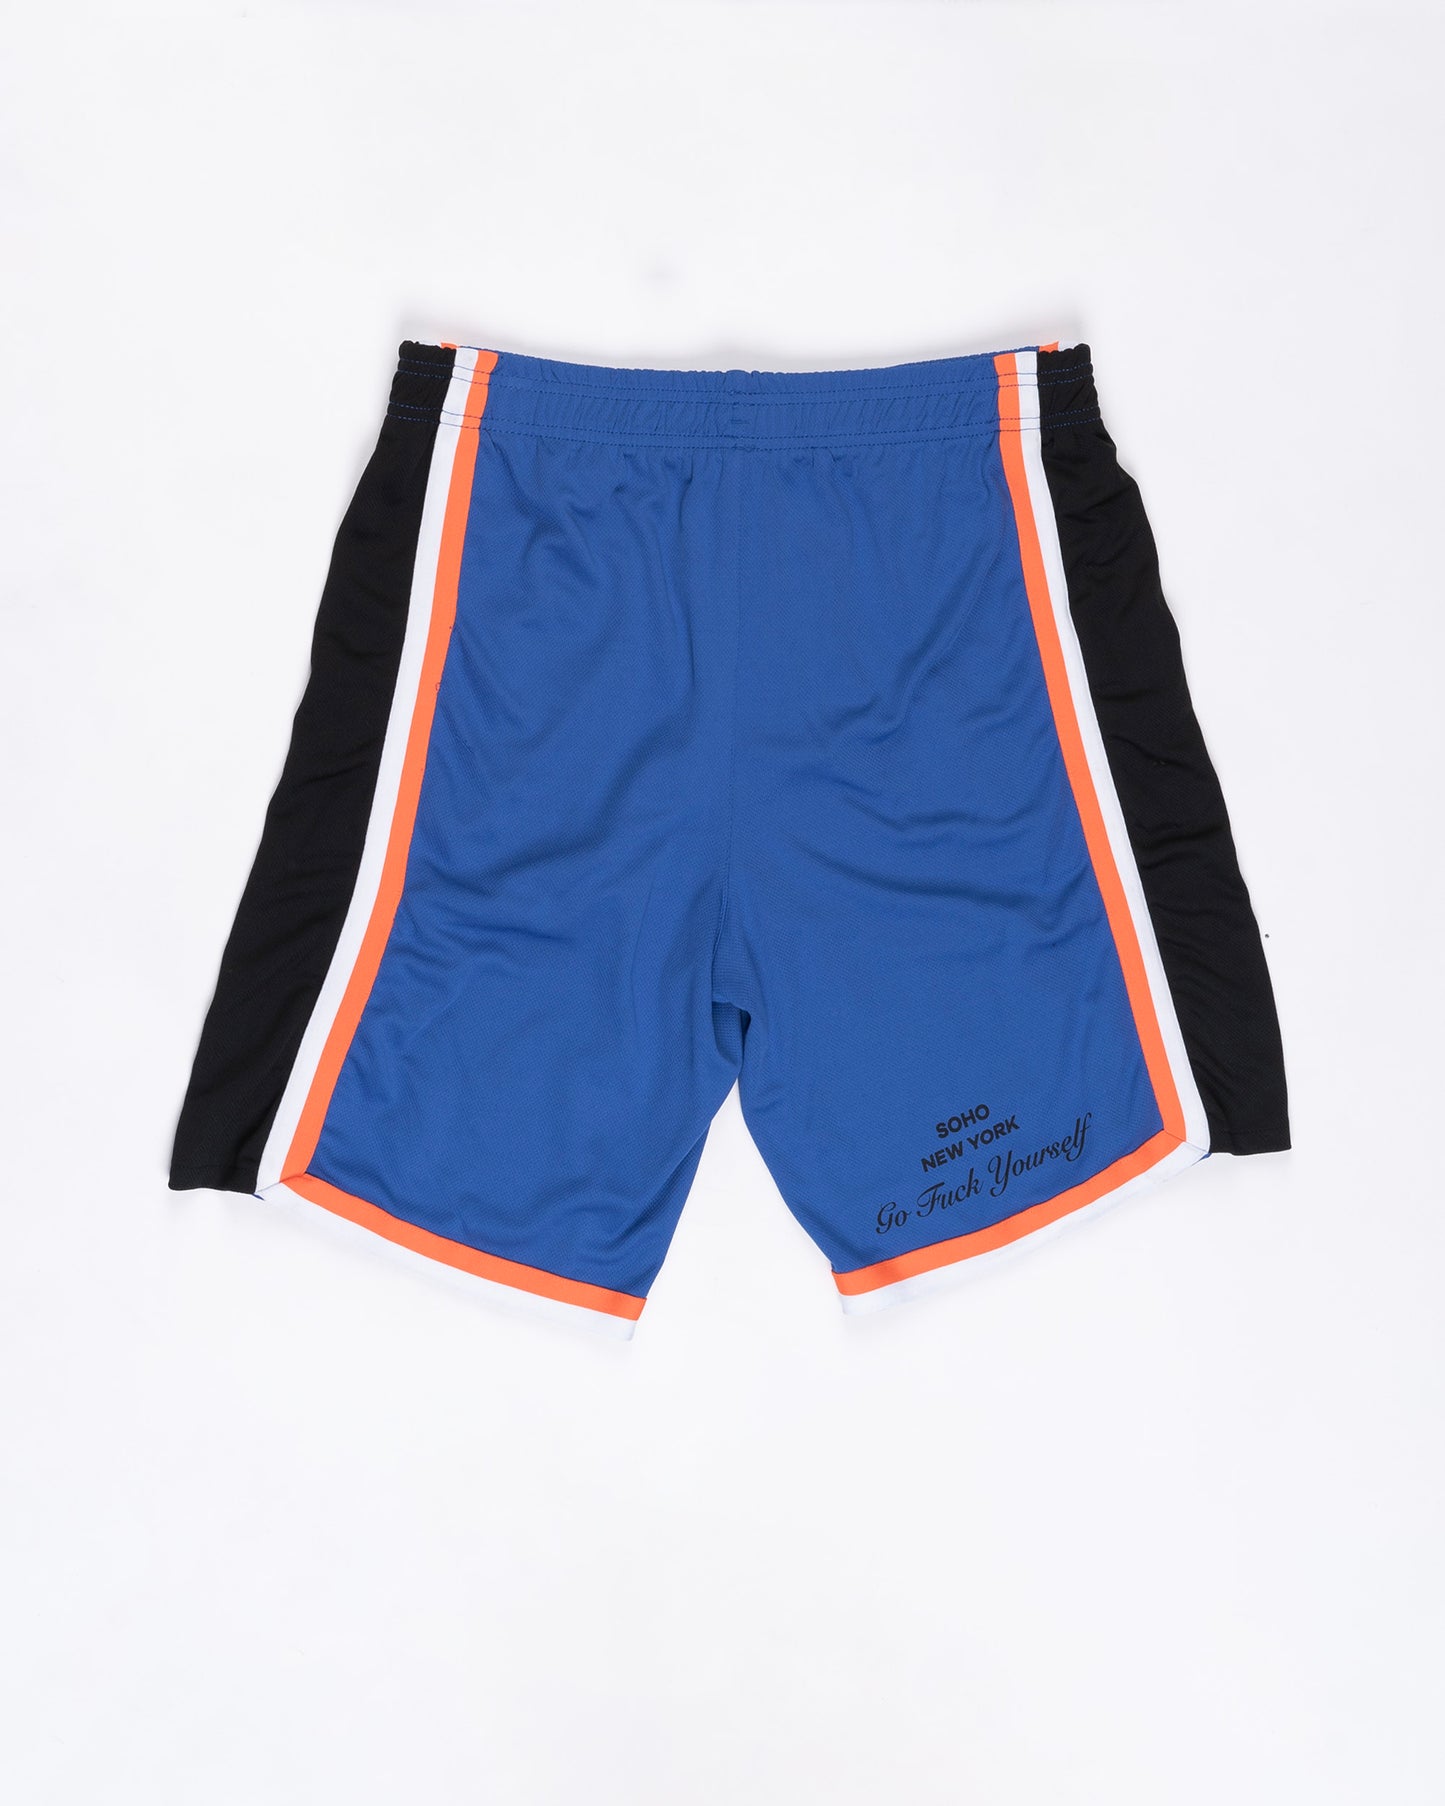 Blue Orange Black And White Basketball Shorts Size: Large